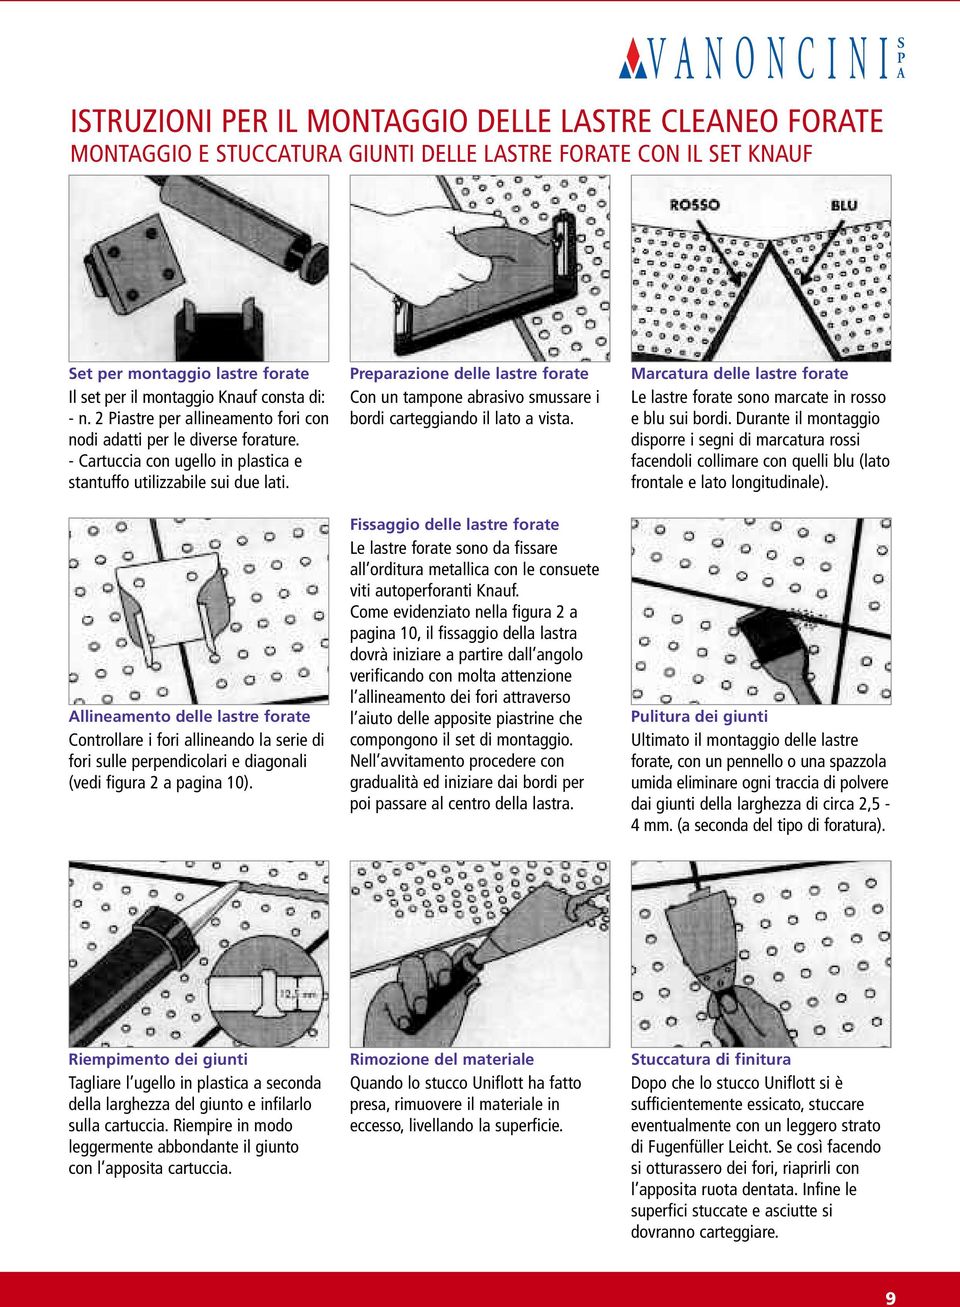 Allineamento delle lastre forate Controllare i fori allineando la serie di fori sulle perpendicolari e diagonali (vedi figura 2 a pagina 10).